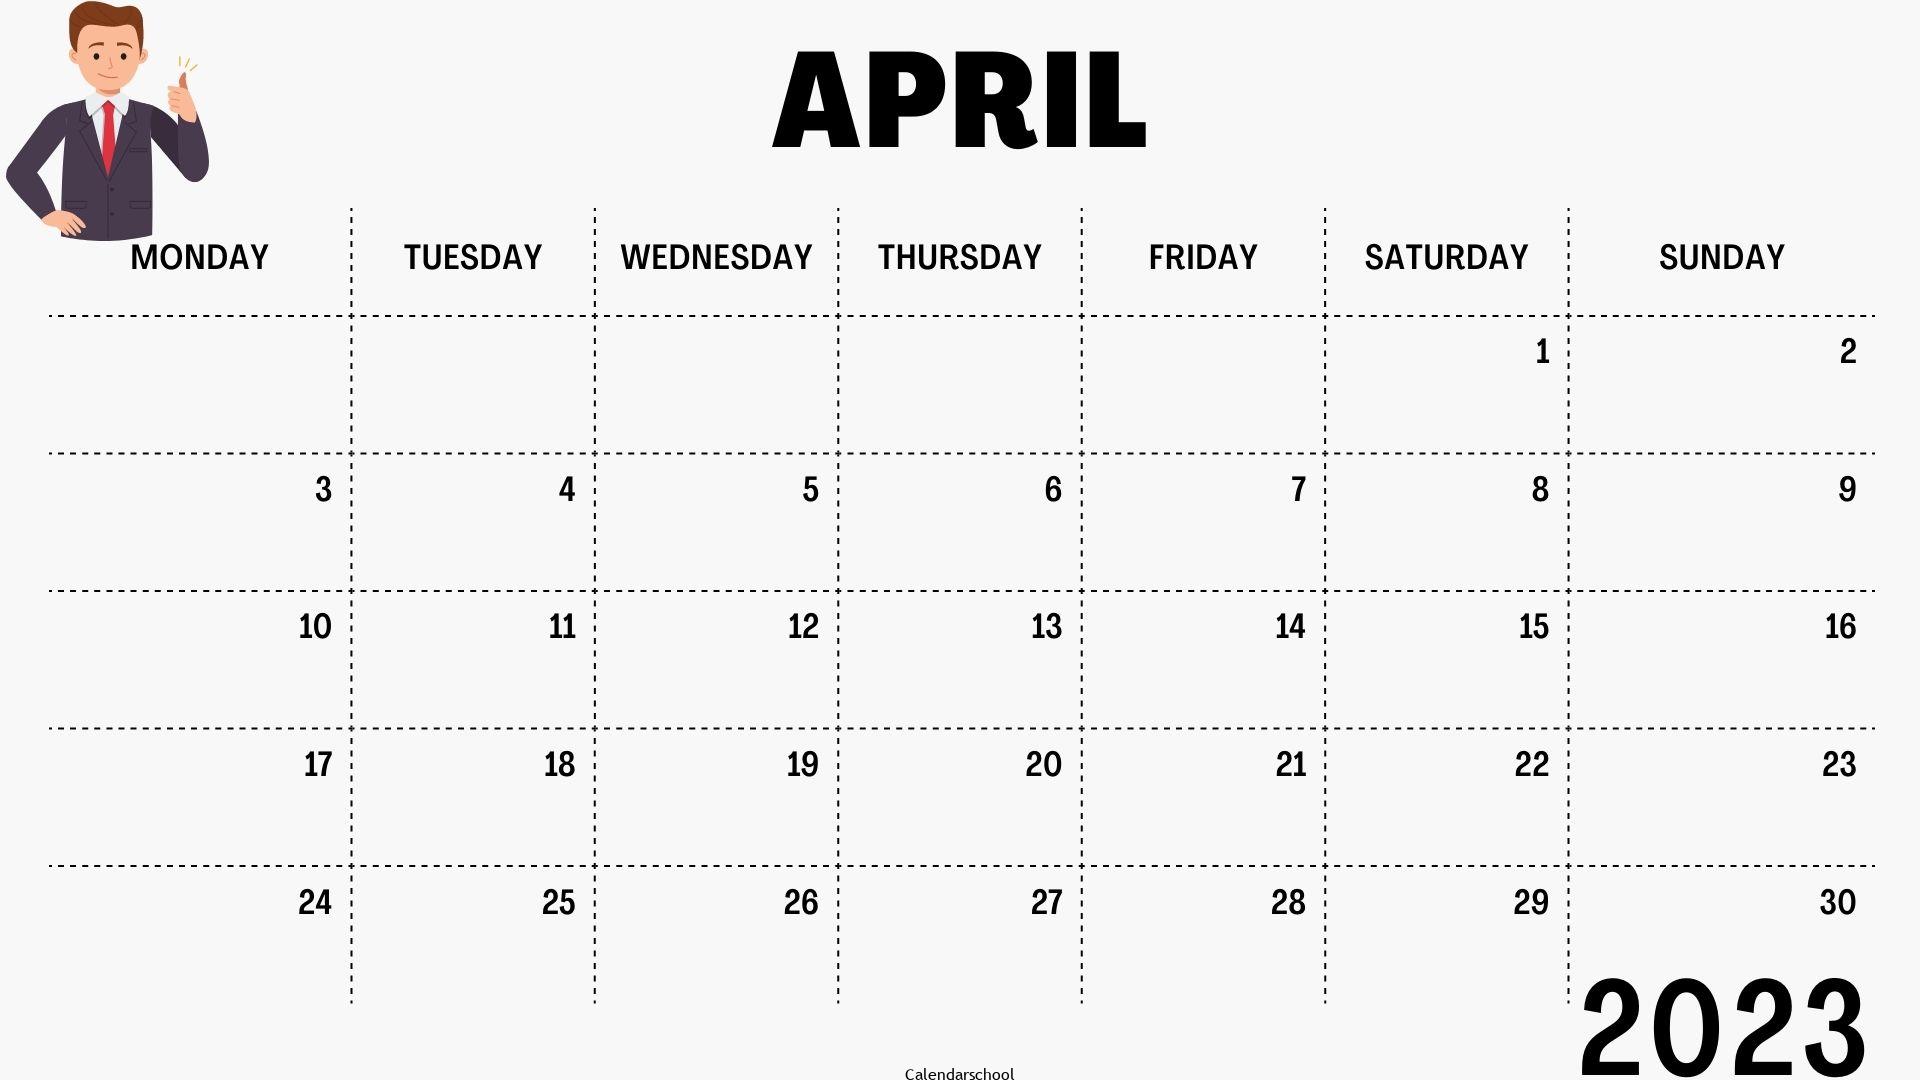 Calendar April 2023 With Holidays